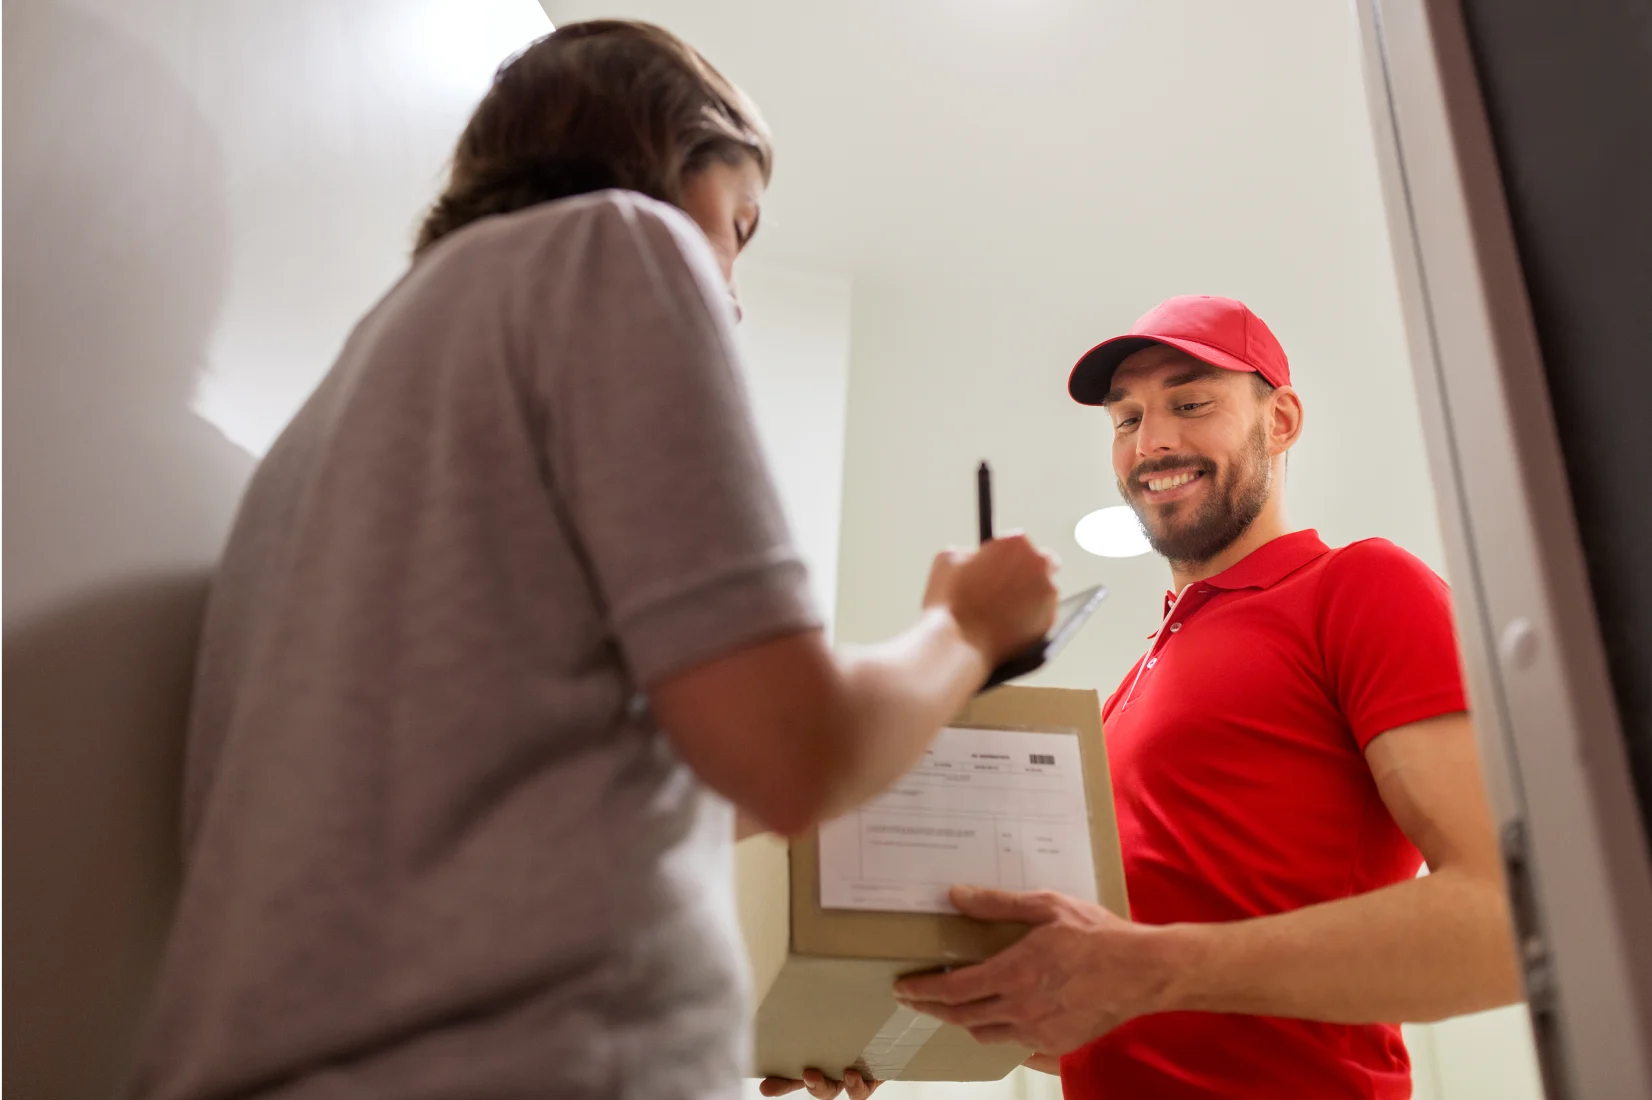 Smiling Parcelforce delivery man handing over parcels at door